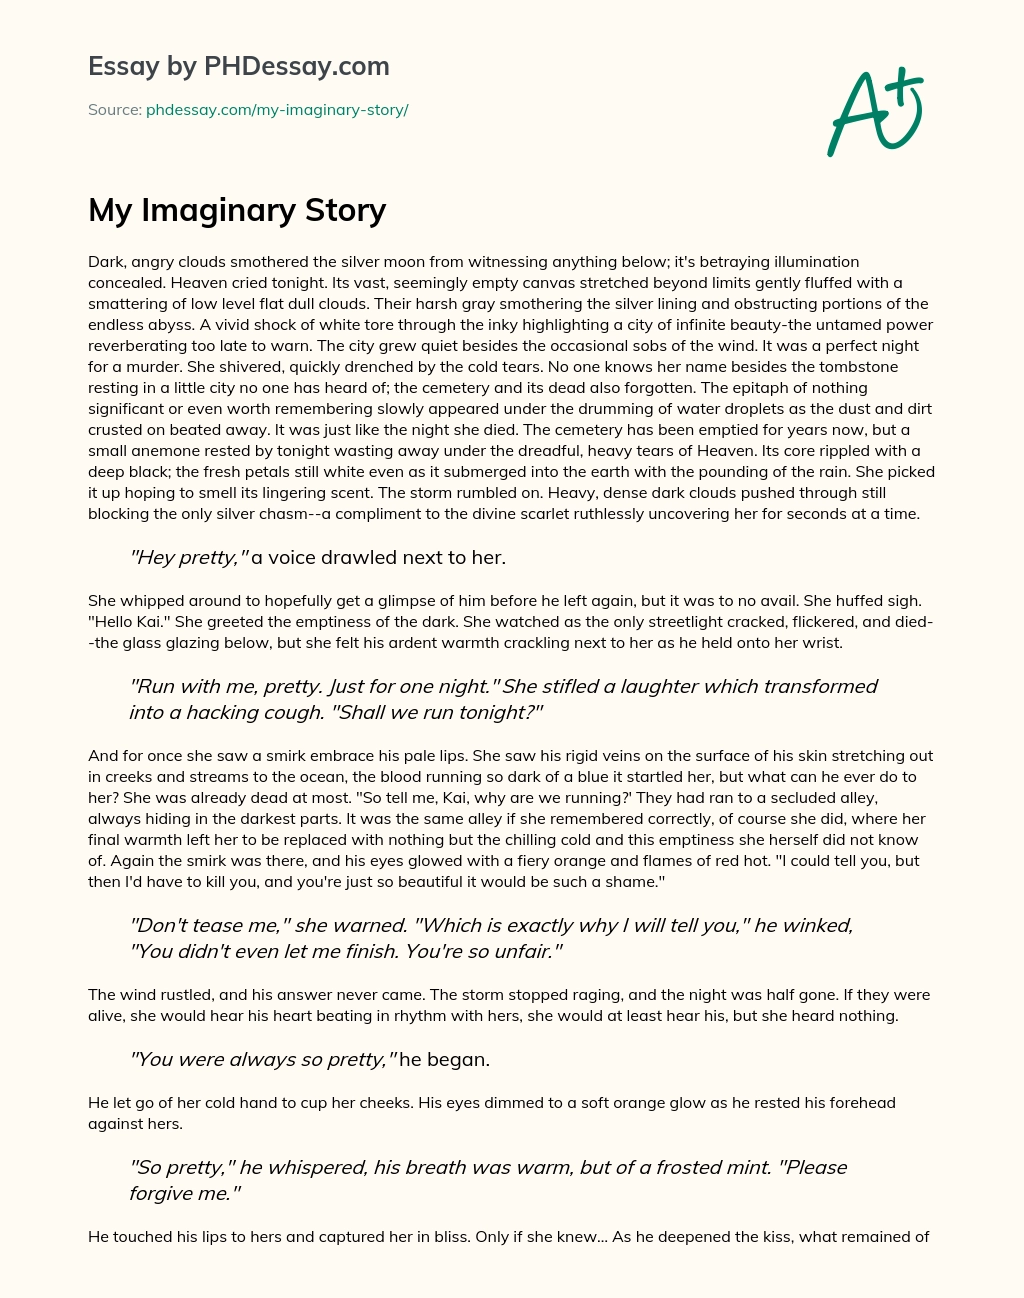 My Imaginary Story essay